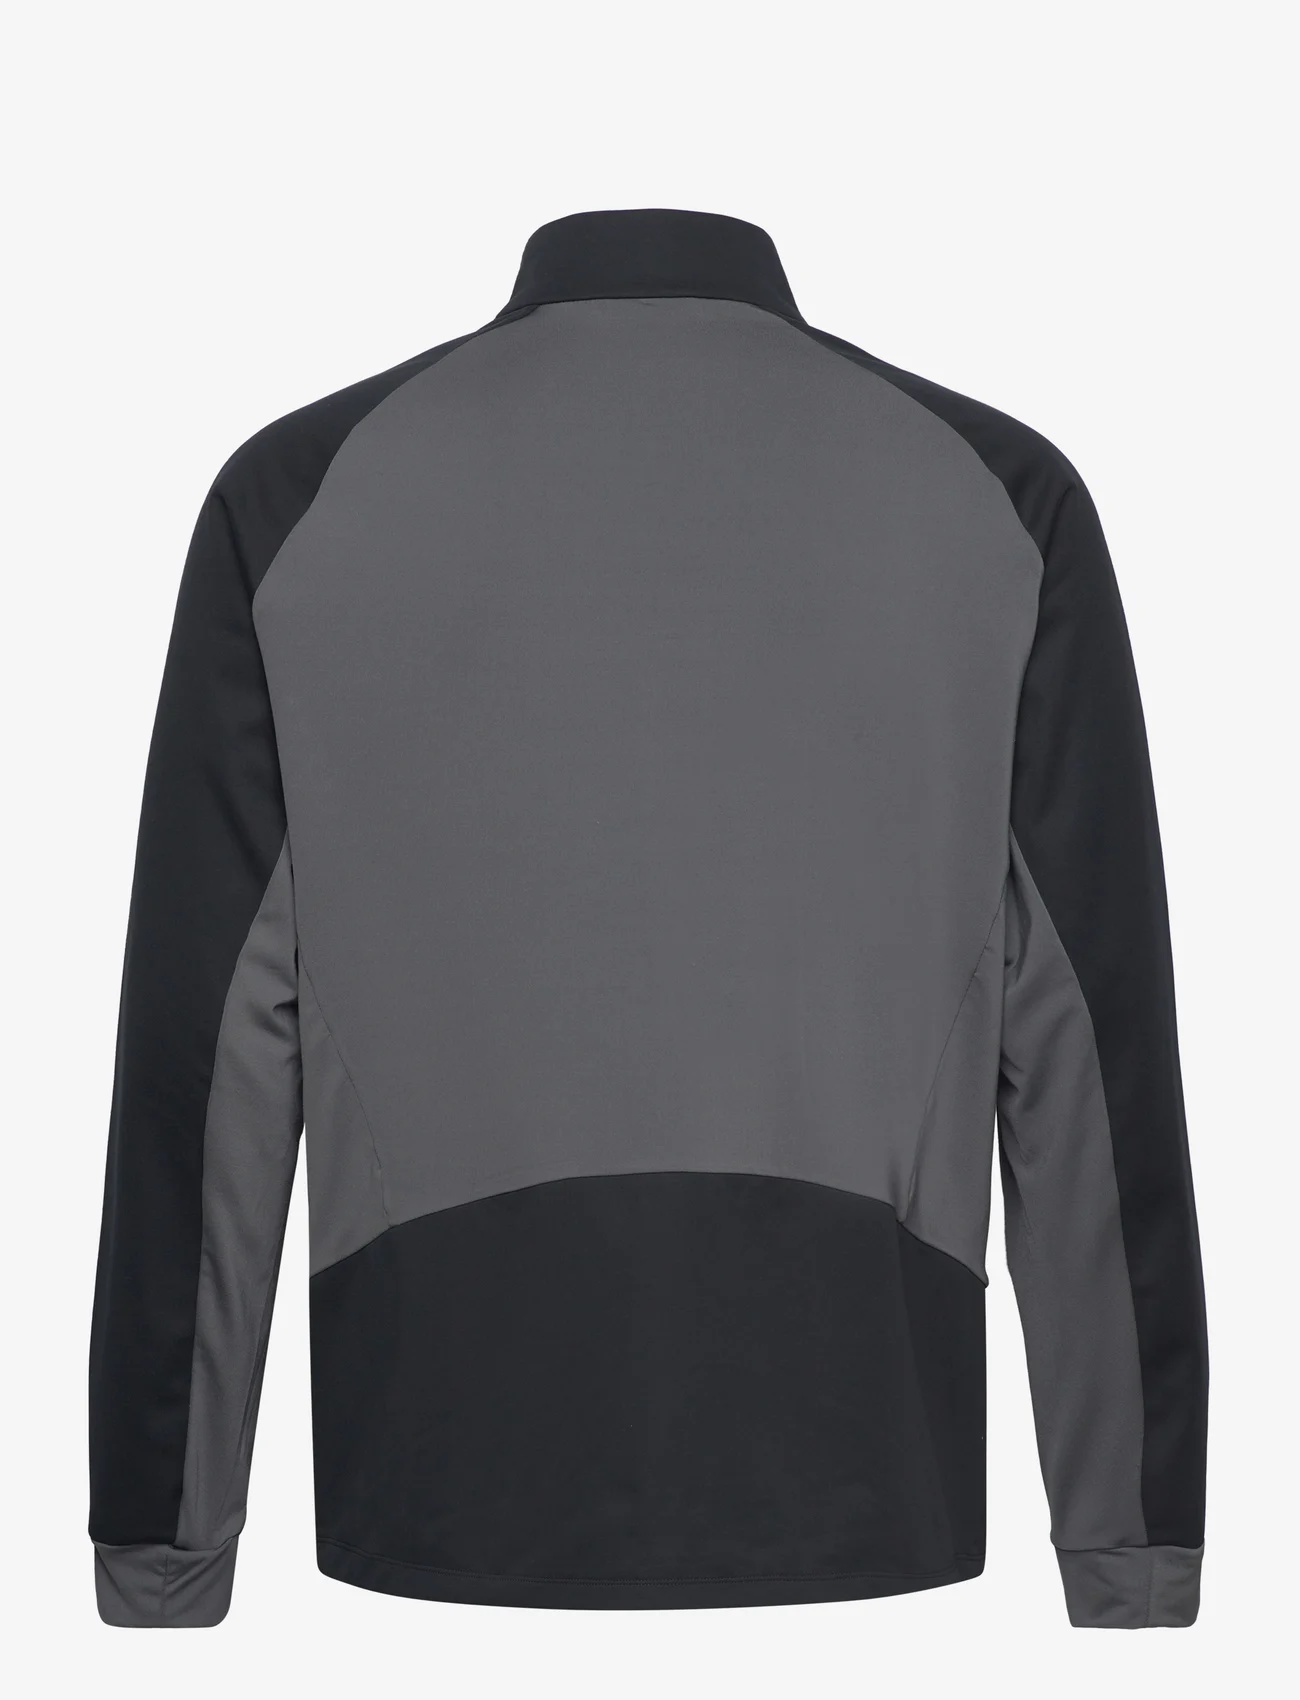 Odlo - ODLO M Jacket BRENSHOLMEN - skijacken - black - new odlo graphite grey - 1